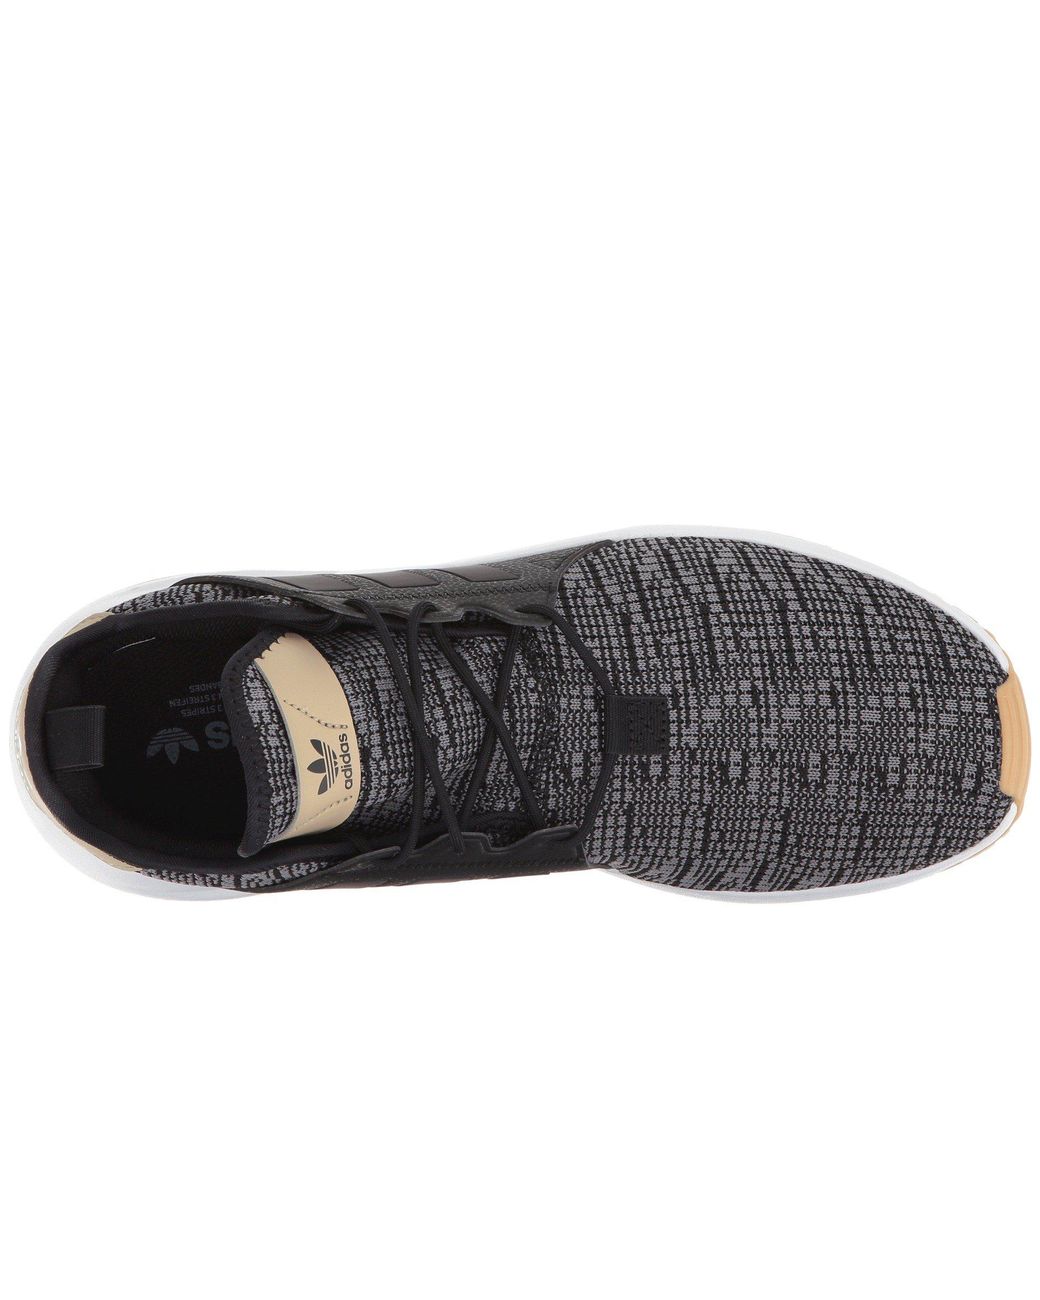 adidas Originals Rubber X_plr (core Black/core Black/gum 3) Men's Shoes for  Men | Lyst